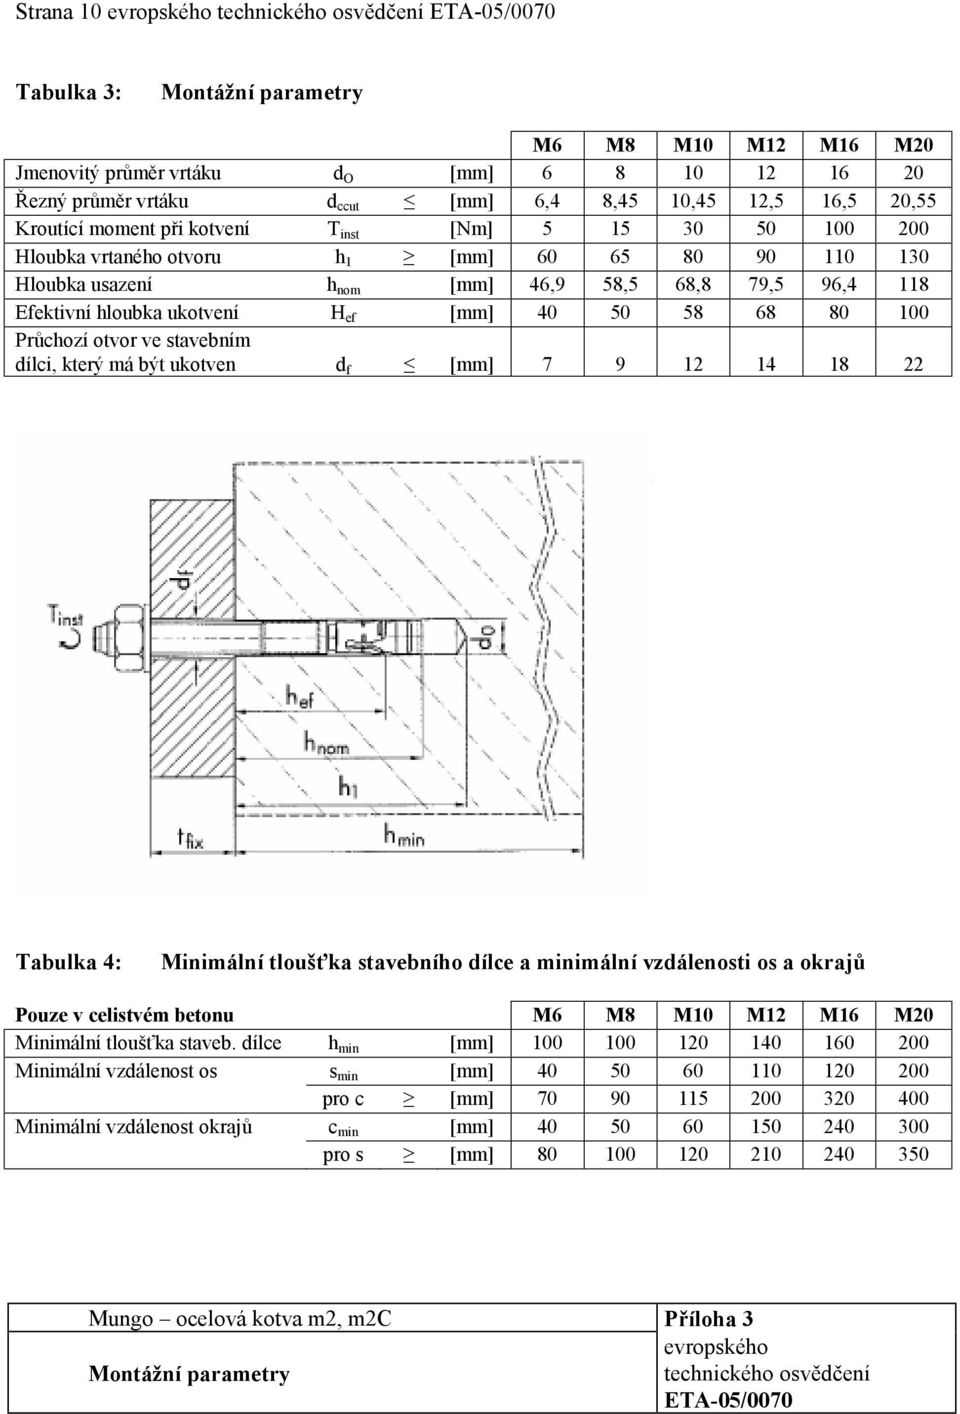 hloubka ukotvení H ef [mm] 40 50 58 68 80 100 Průchozí otvor ve stavebním dílci, který má být ukotven d f [mm] 7 9 12 14 18 22 Tabulka 4: Minimální tloušťka stavebního dílce a minimální vzdálenosti